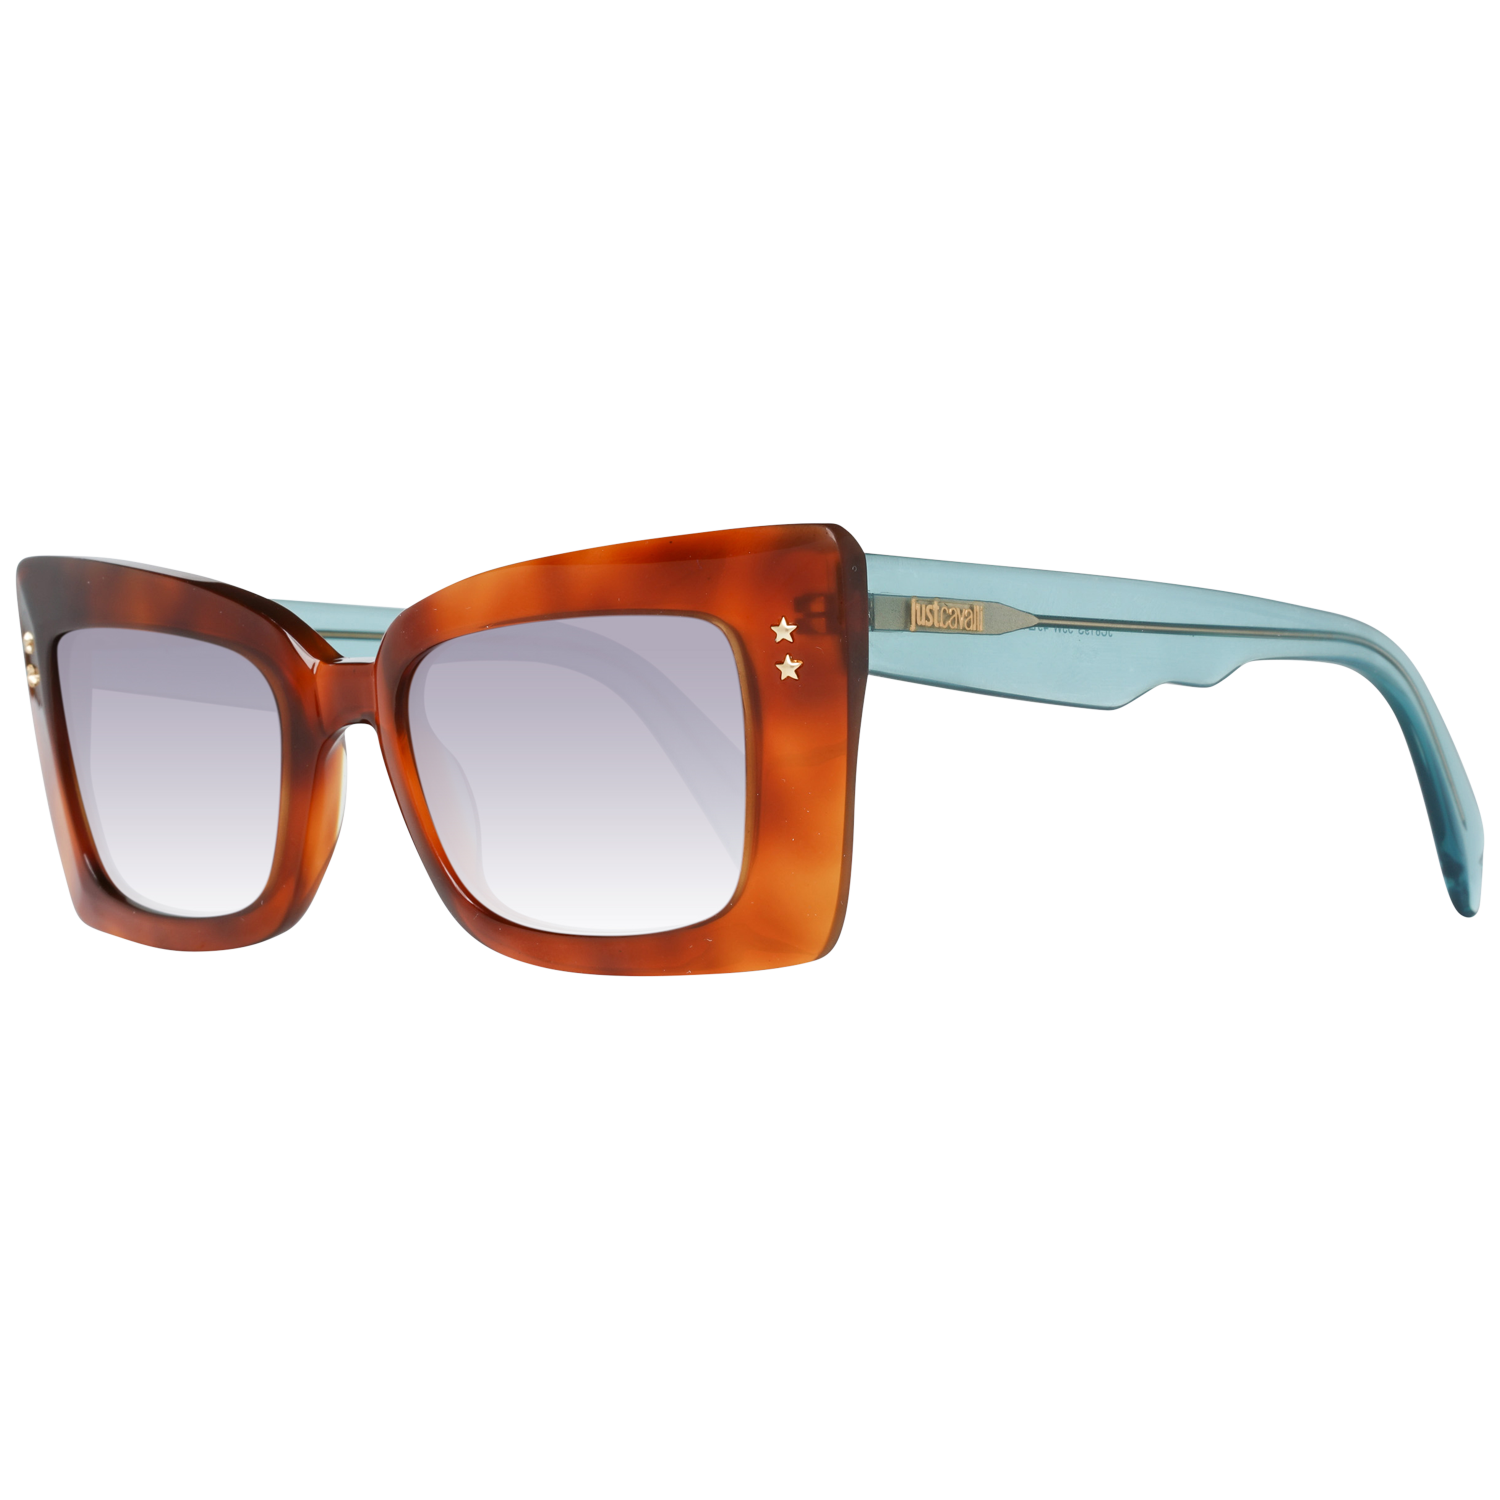 Just Cavalli Sunglasses Just Cavalli Sunglasses JC819S 53W 49 Eyeglasses Eyewear UK USA Australia 